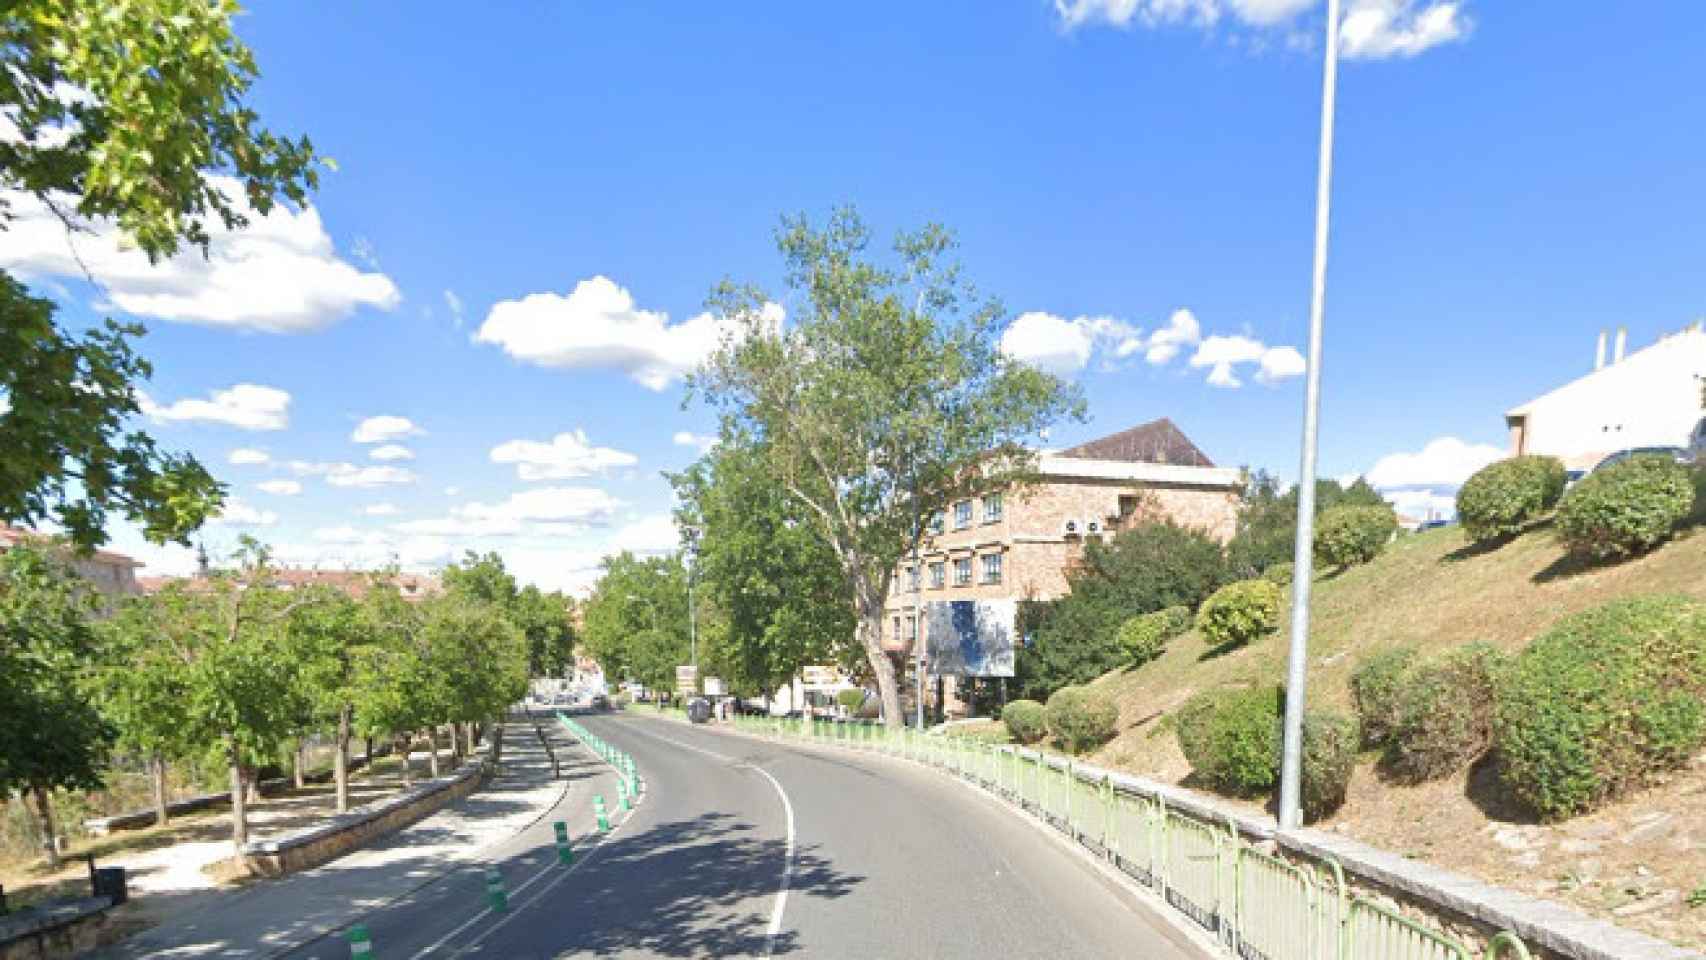 Calle de Segovia en la que ha sido hallado el cadáver de un hombre